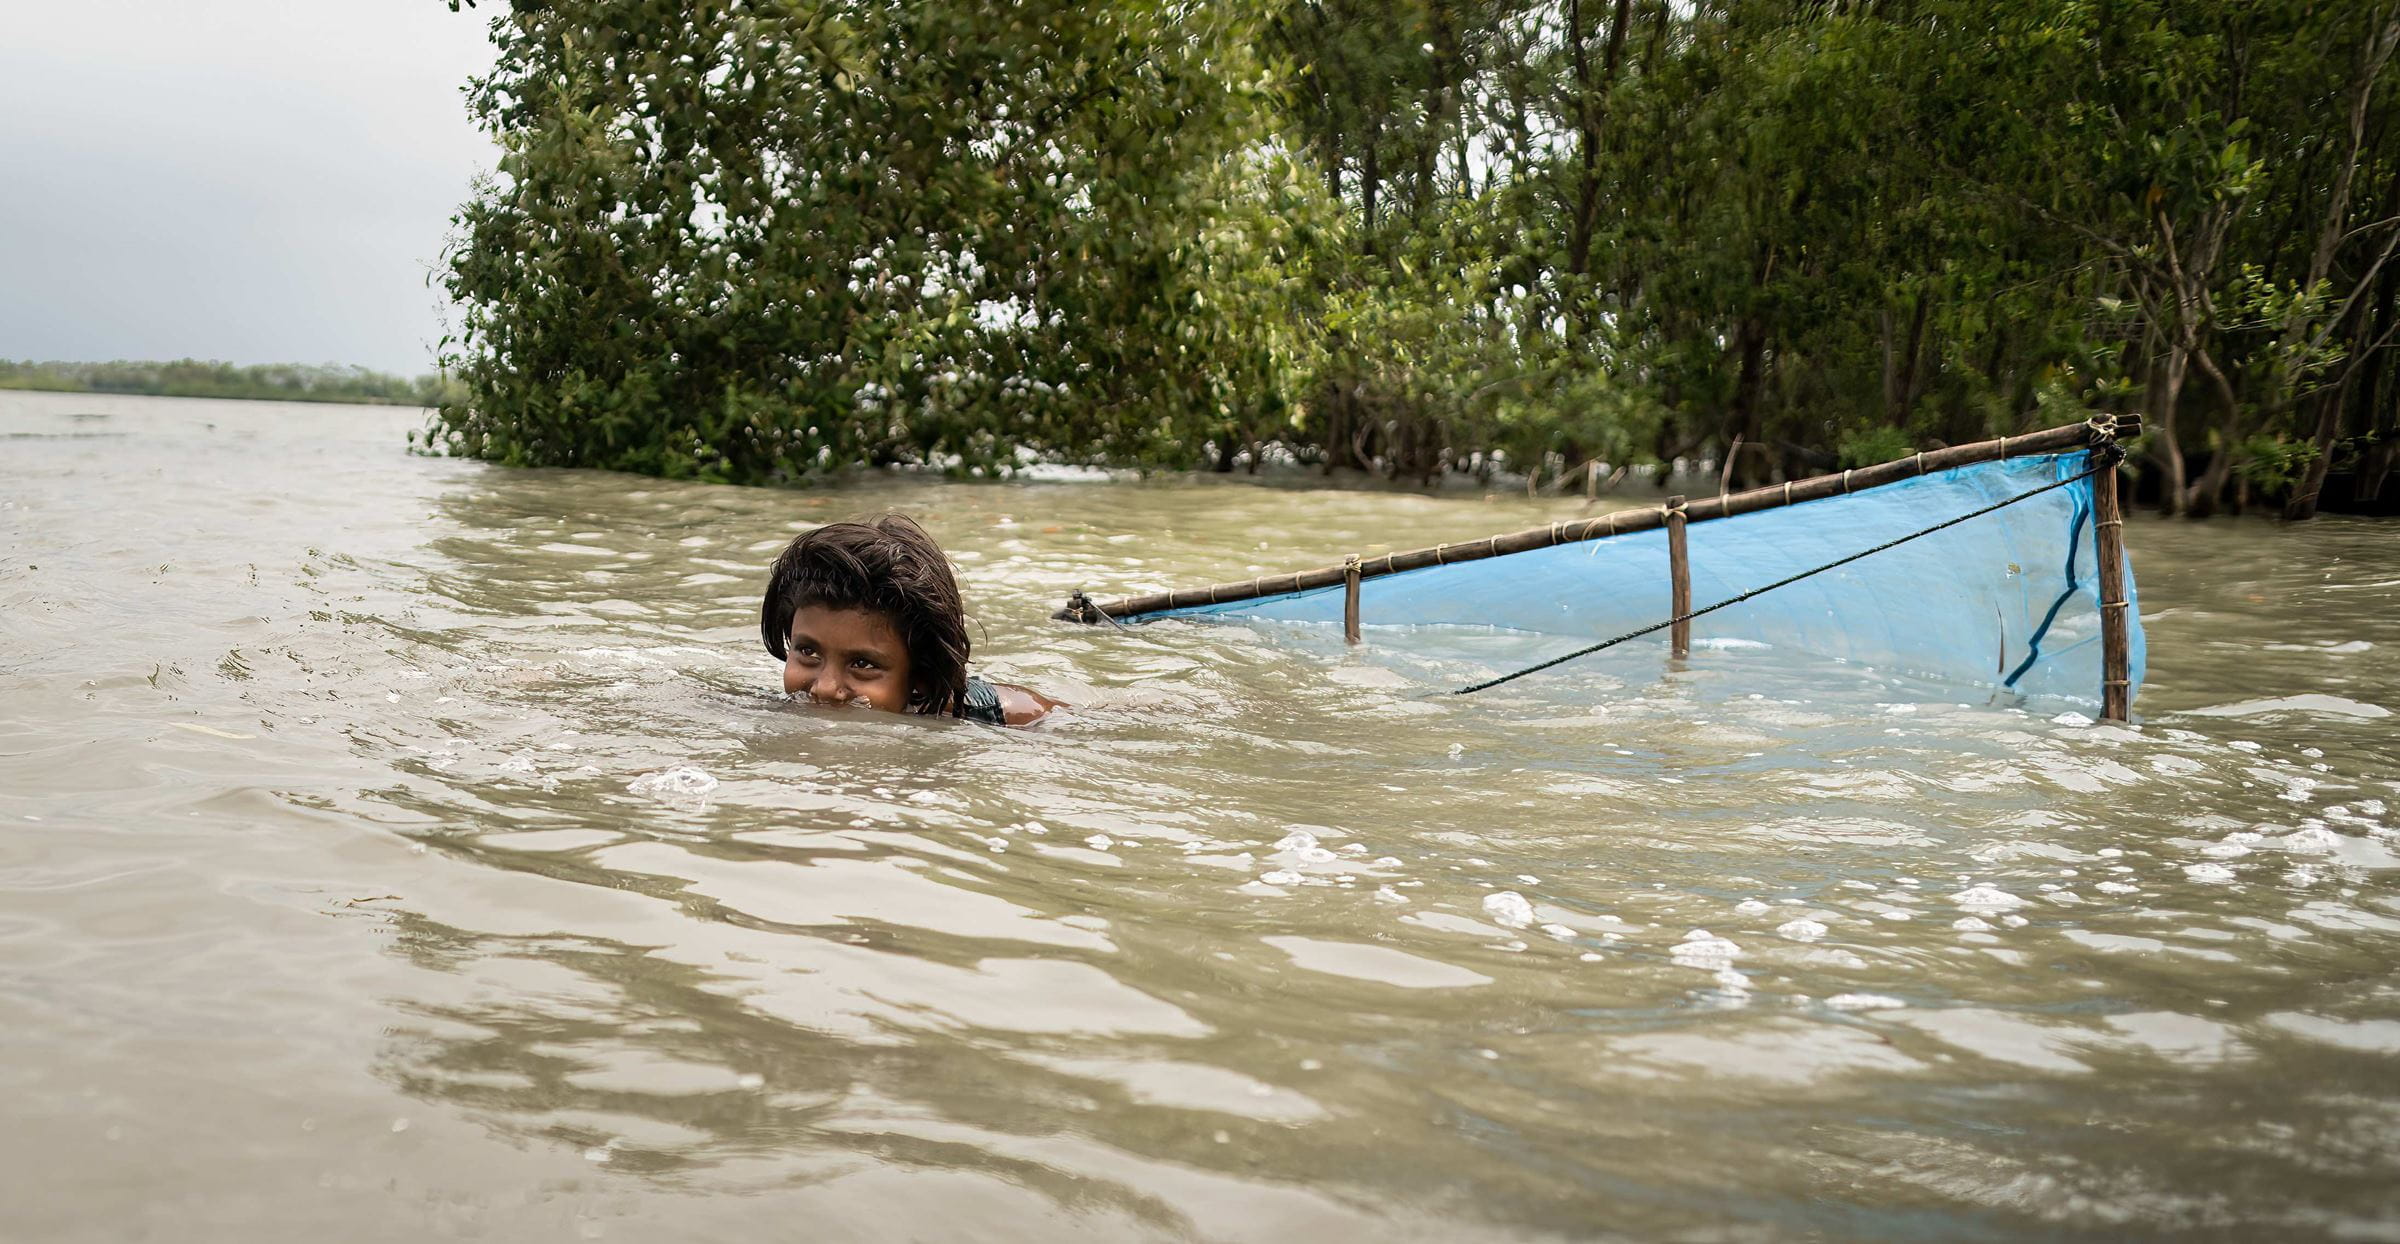 Bangladesch: Ein Mädchen schwimmt im Wasser und fischt Shrimps (Quelle: Lars Heidrich)